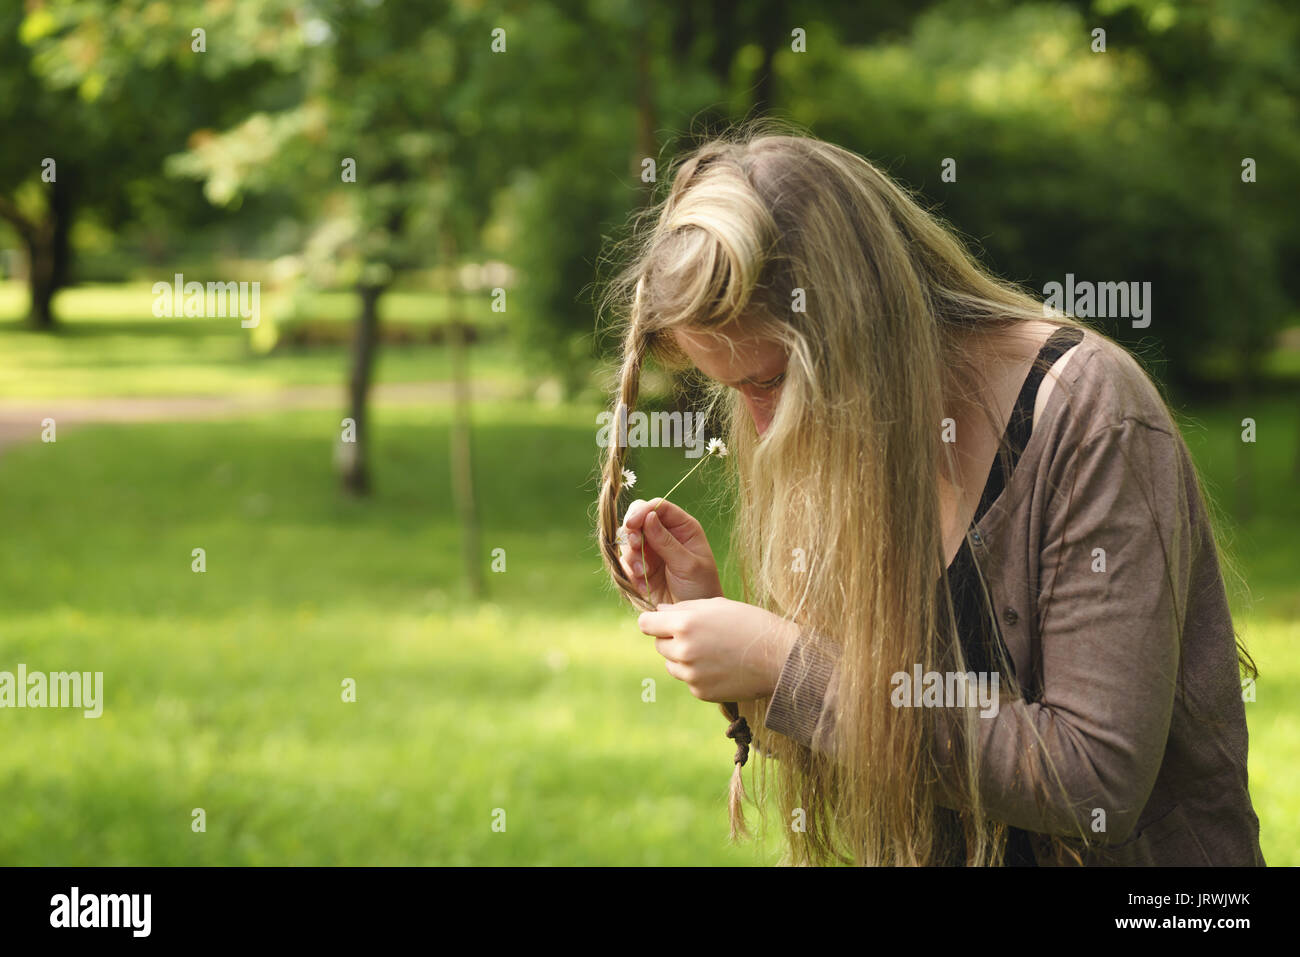 Teen girl allegare daisy fiori nei capelli in parco verde da dietro nel giorno di estate Foto Stock